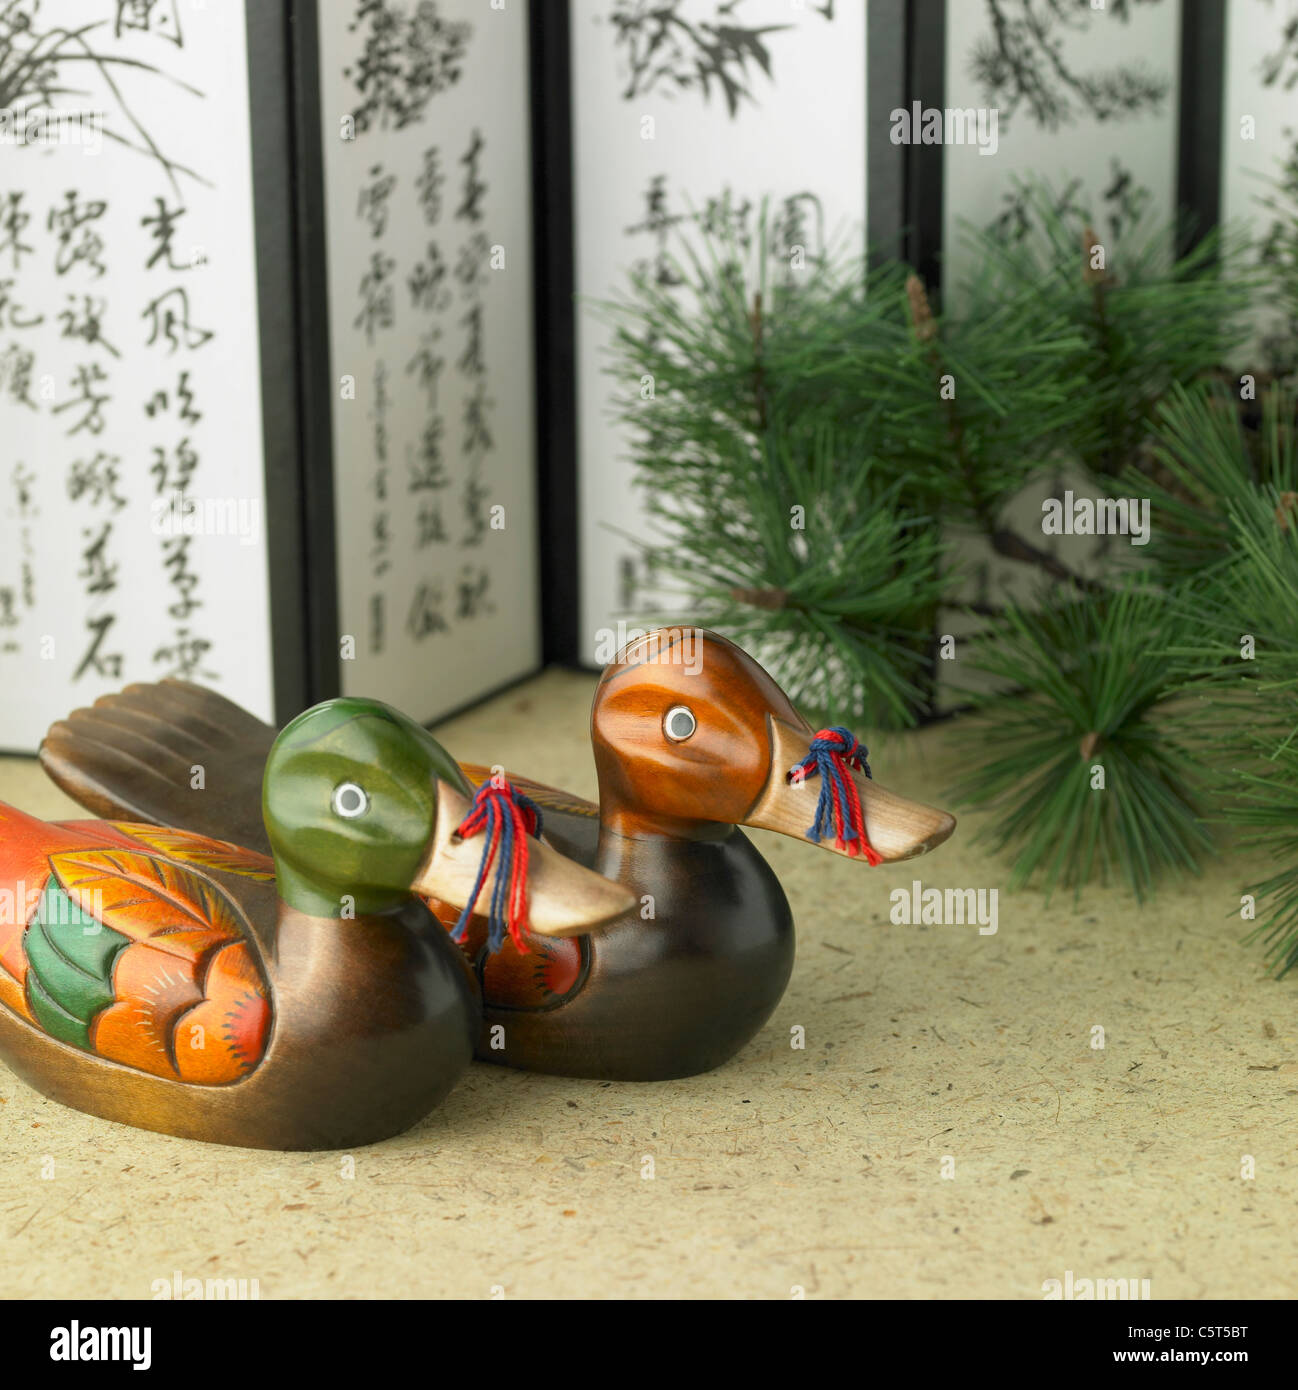 Koreanische traditionelle Ornamente Stockfoto